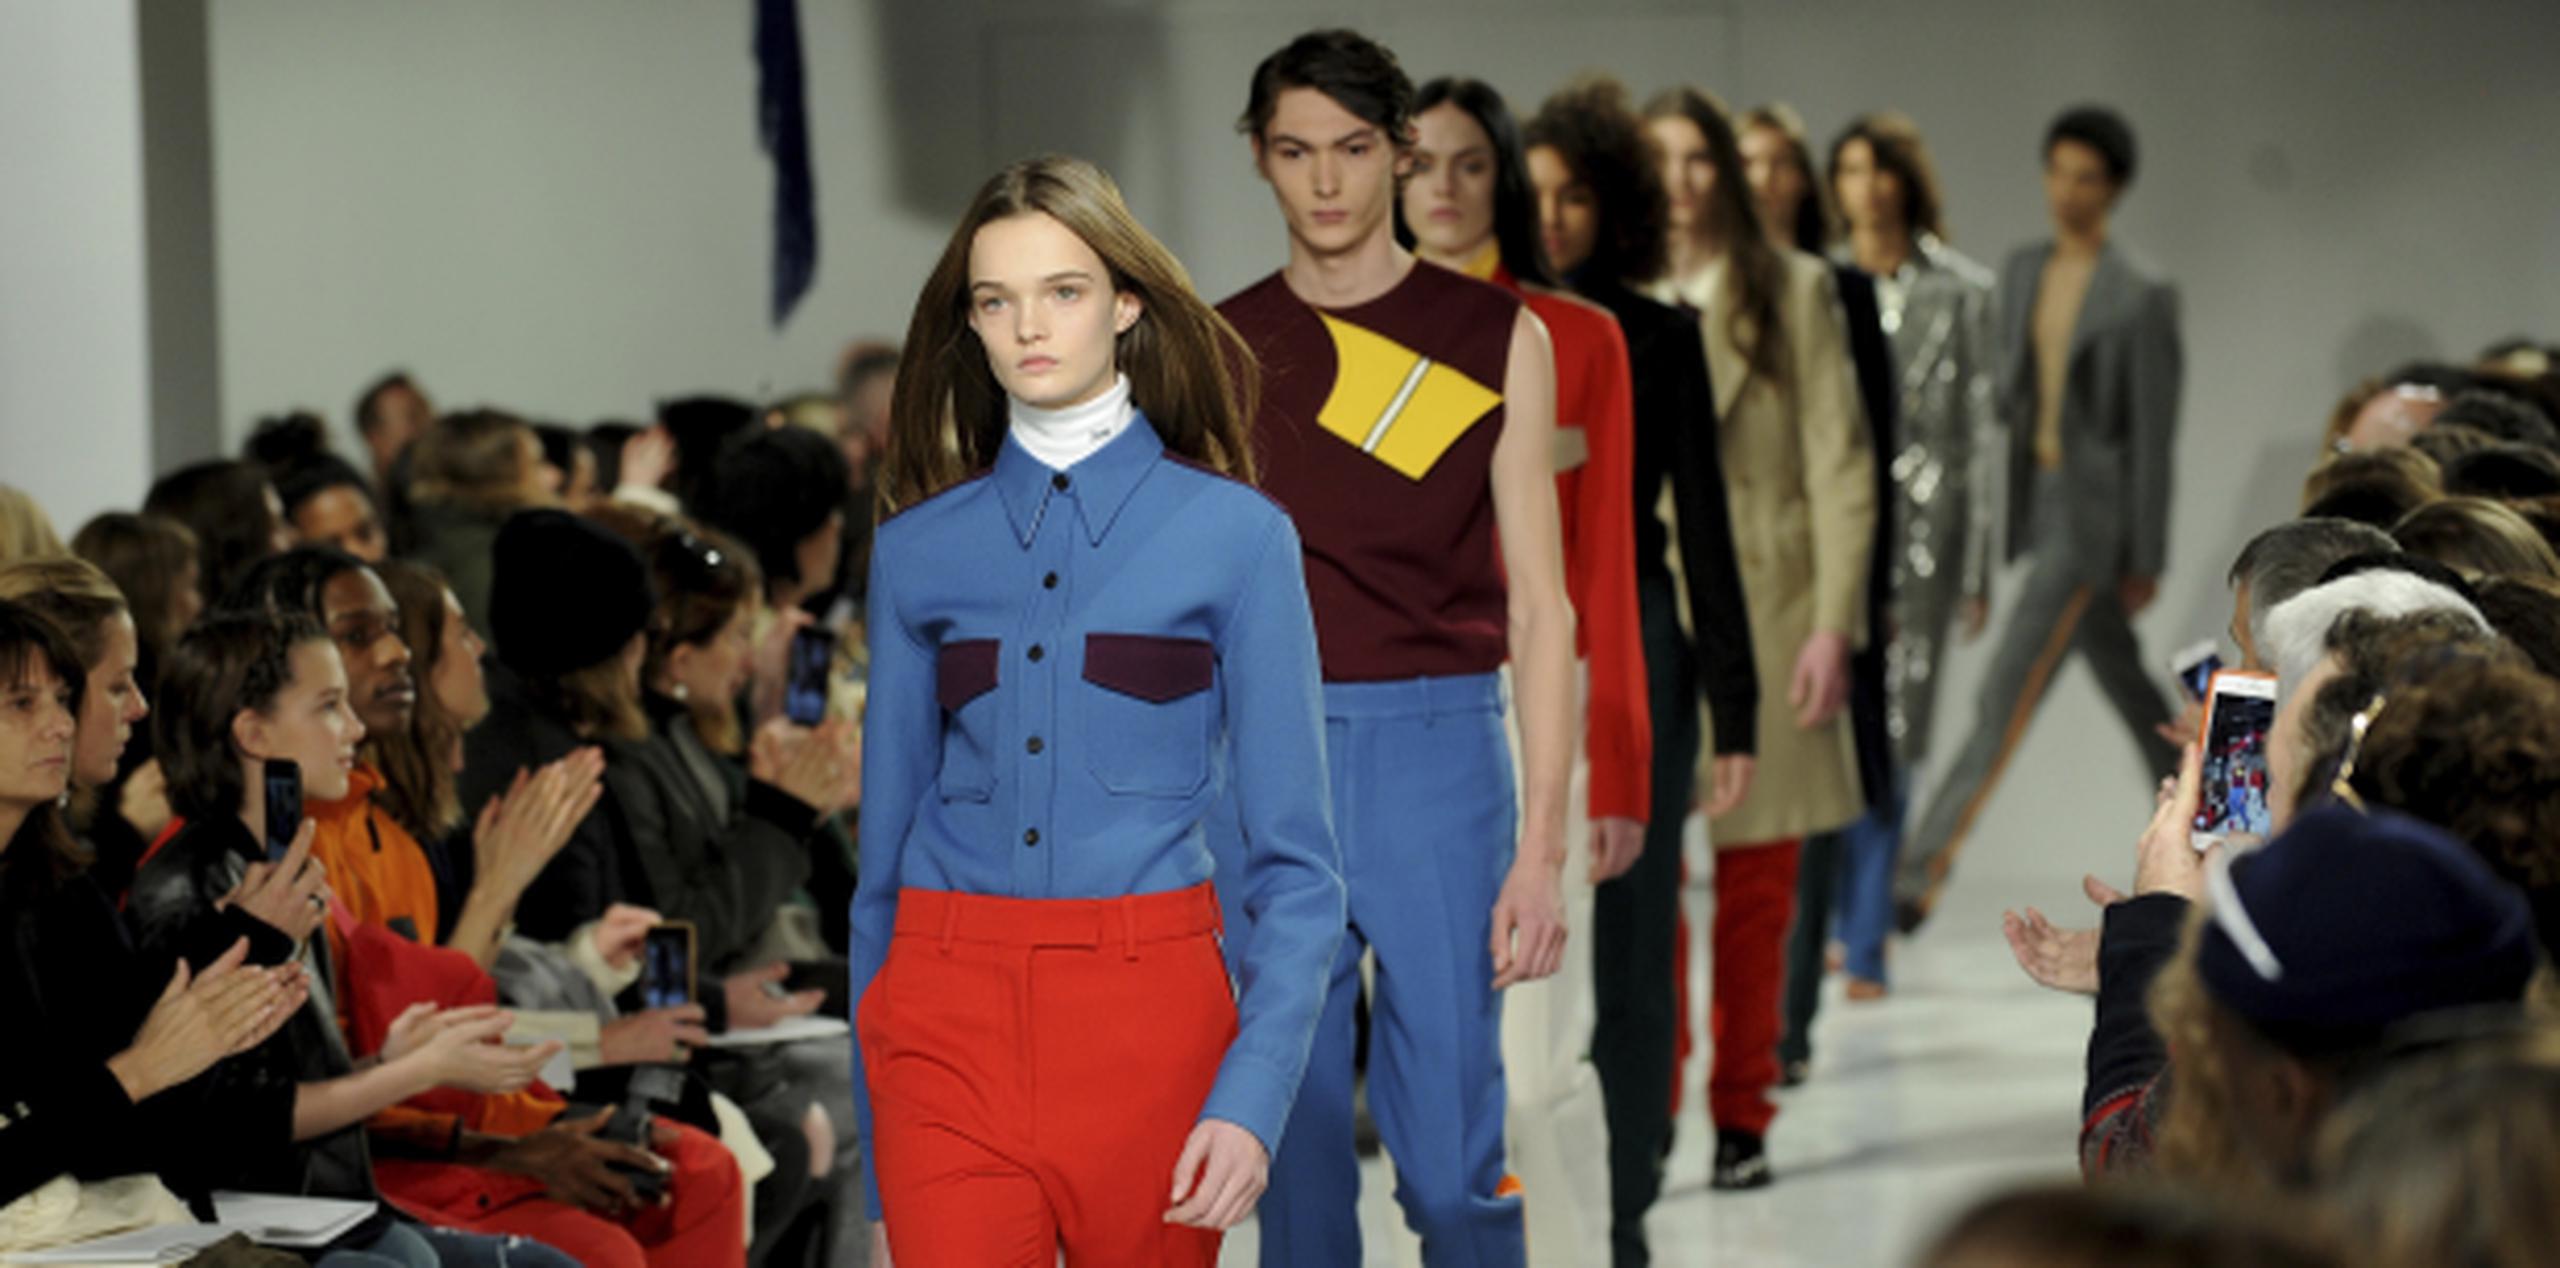 Modelos desfilan por la pasarela mostrando los diseños de la colección Calvin Klein. (AP/Diane Bondareff)
